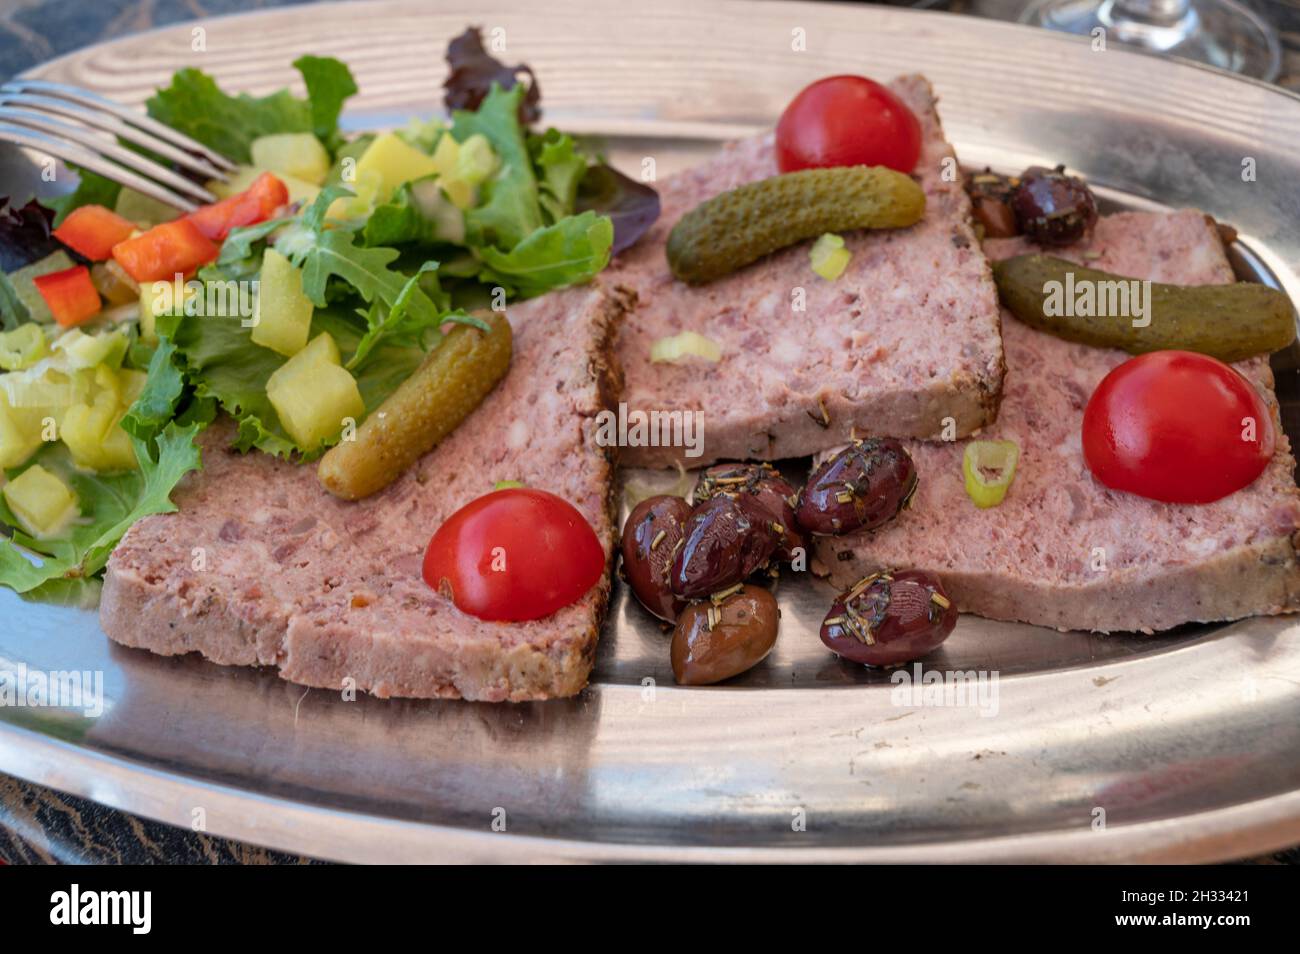 Ein typisches Fleischpastete, das als Vorspeise in Provnce, Frankreich, serviert wird Stockfoto